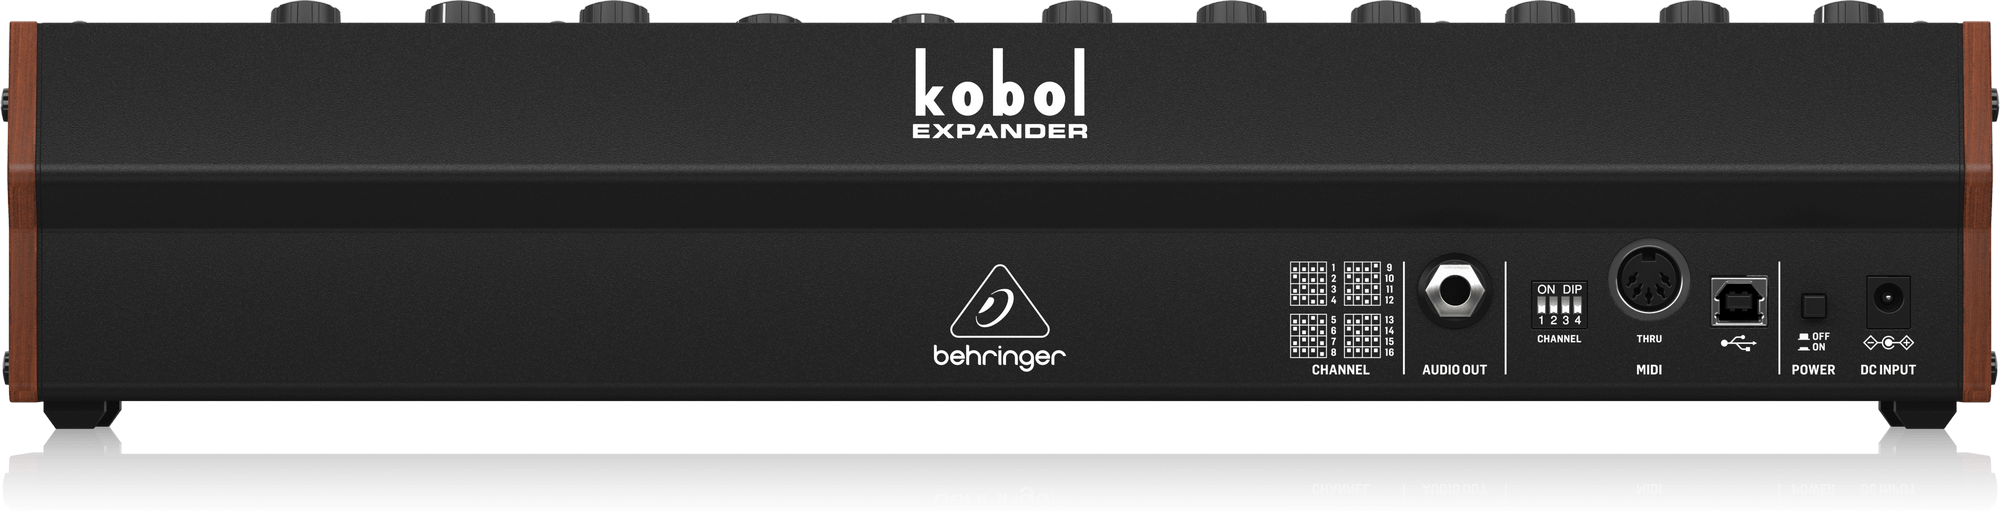 Behringer | Product | KOBOL EXPANDER